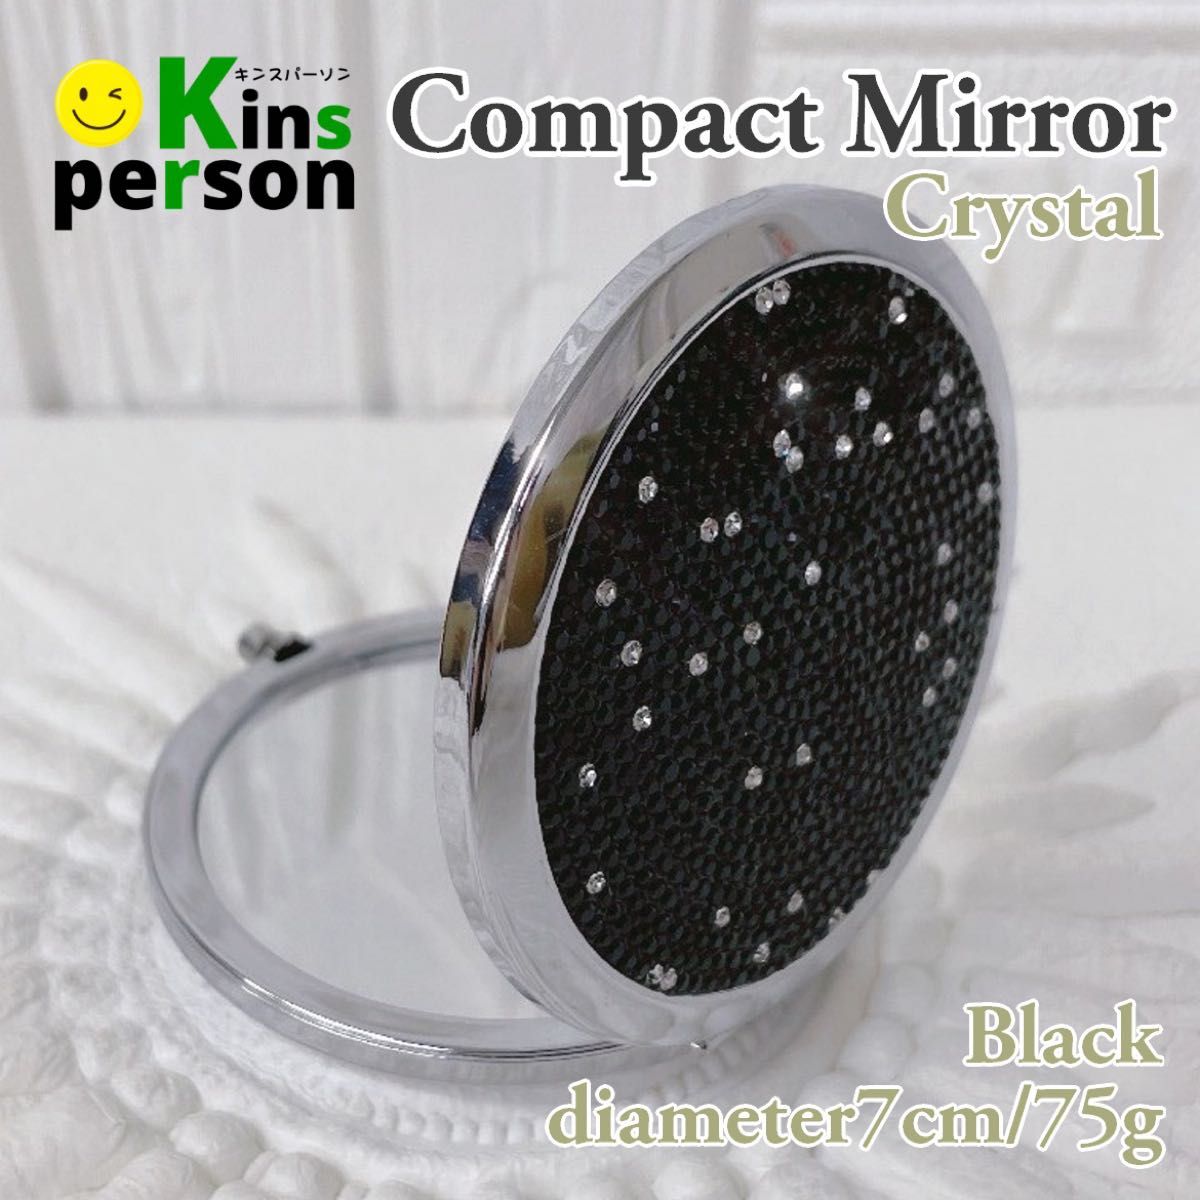 セール 新品 クリスタル両面コンパクトミラー ブラック キラキラ ラインストーン デコレーション ダイヤモンドカット 手鏡 携帯用